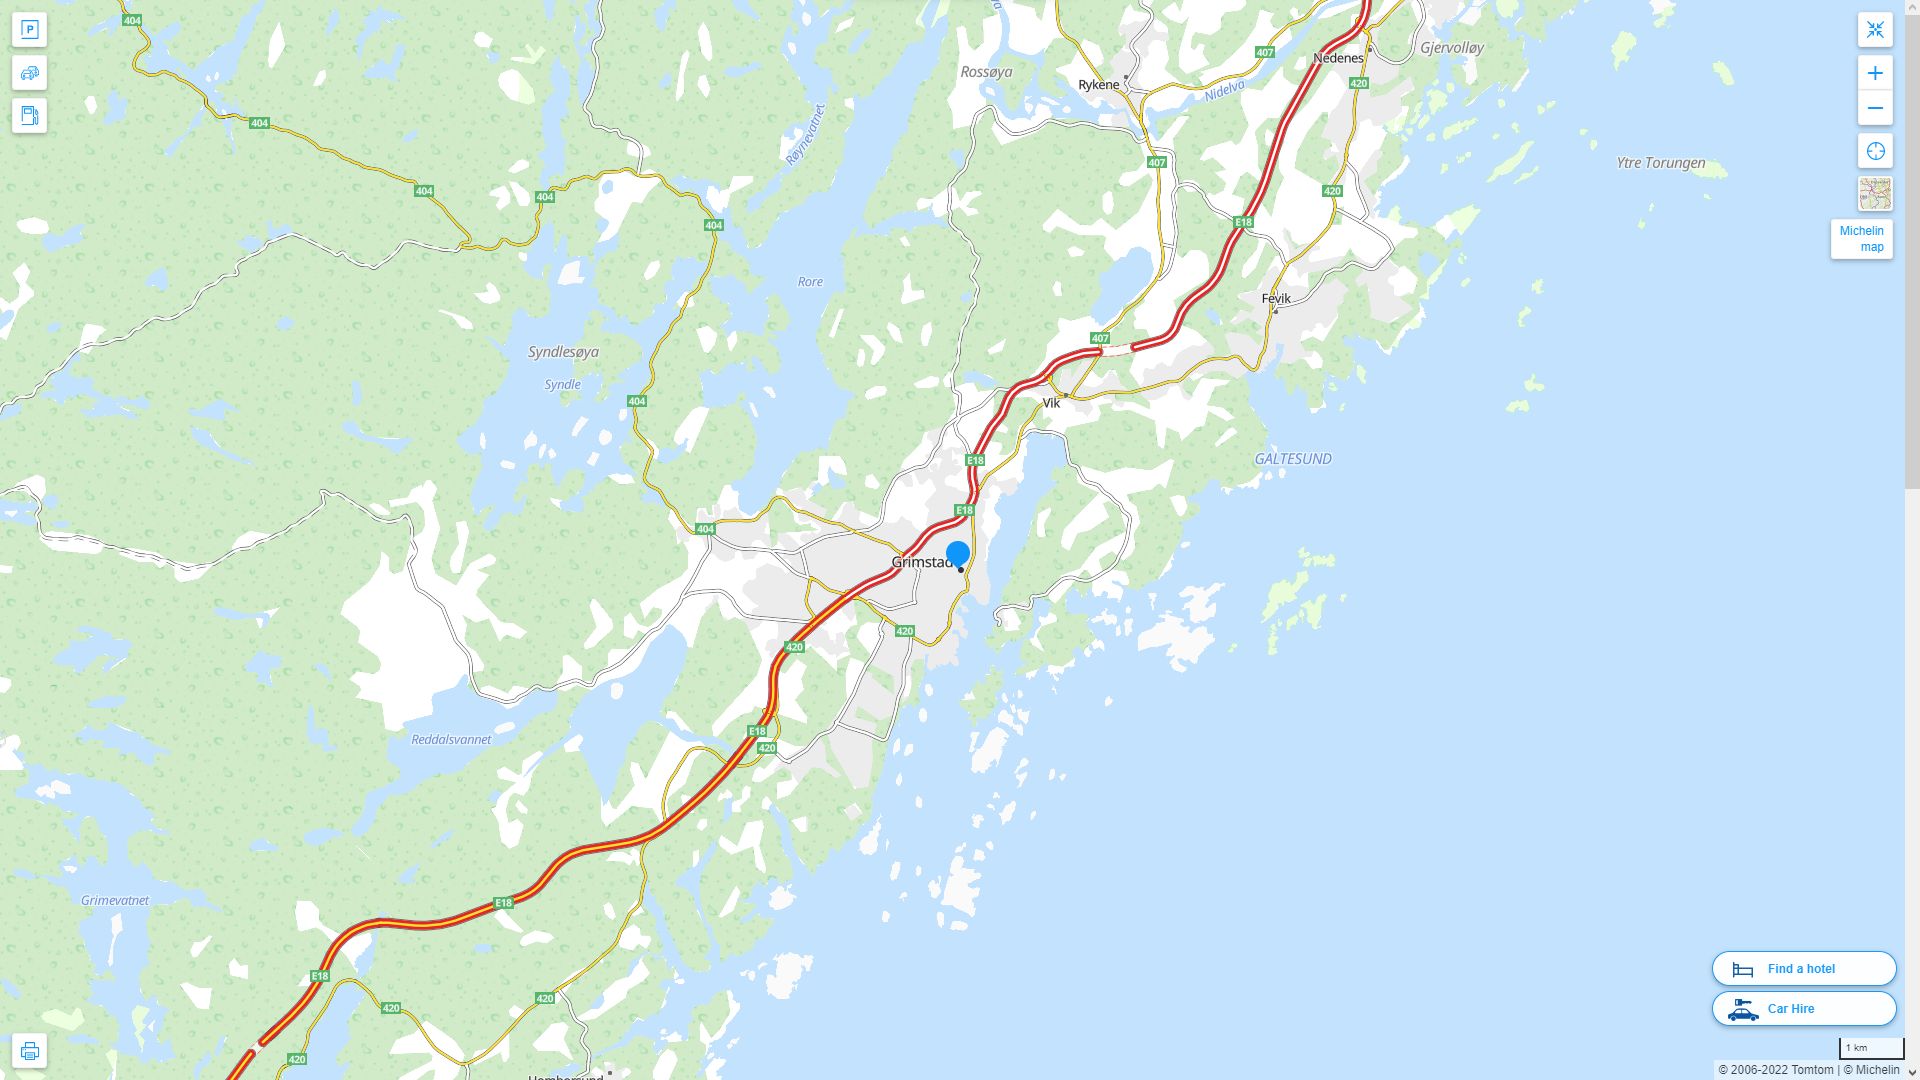 Grimstad Norvege Autoroute et carte routiere